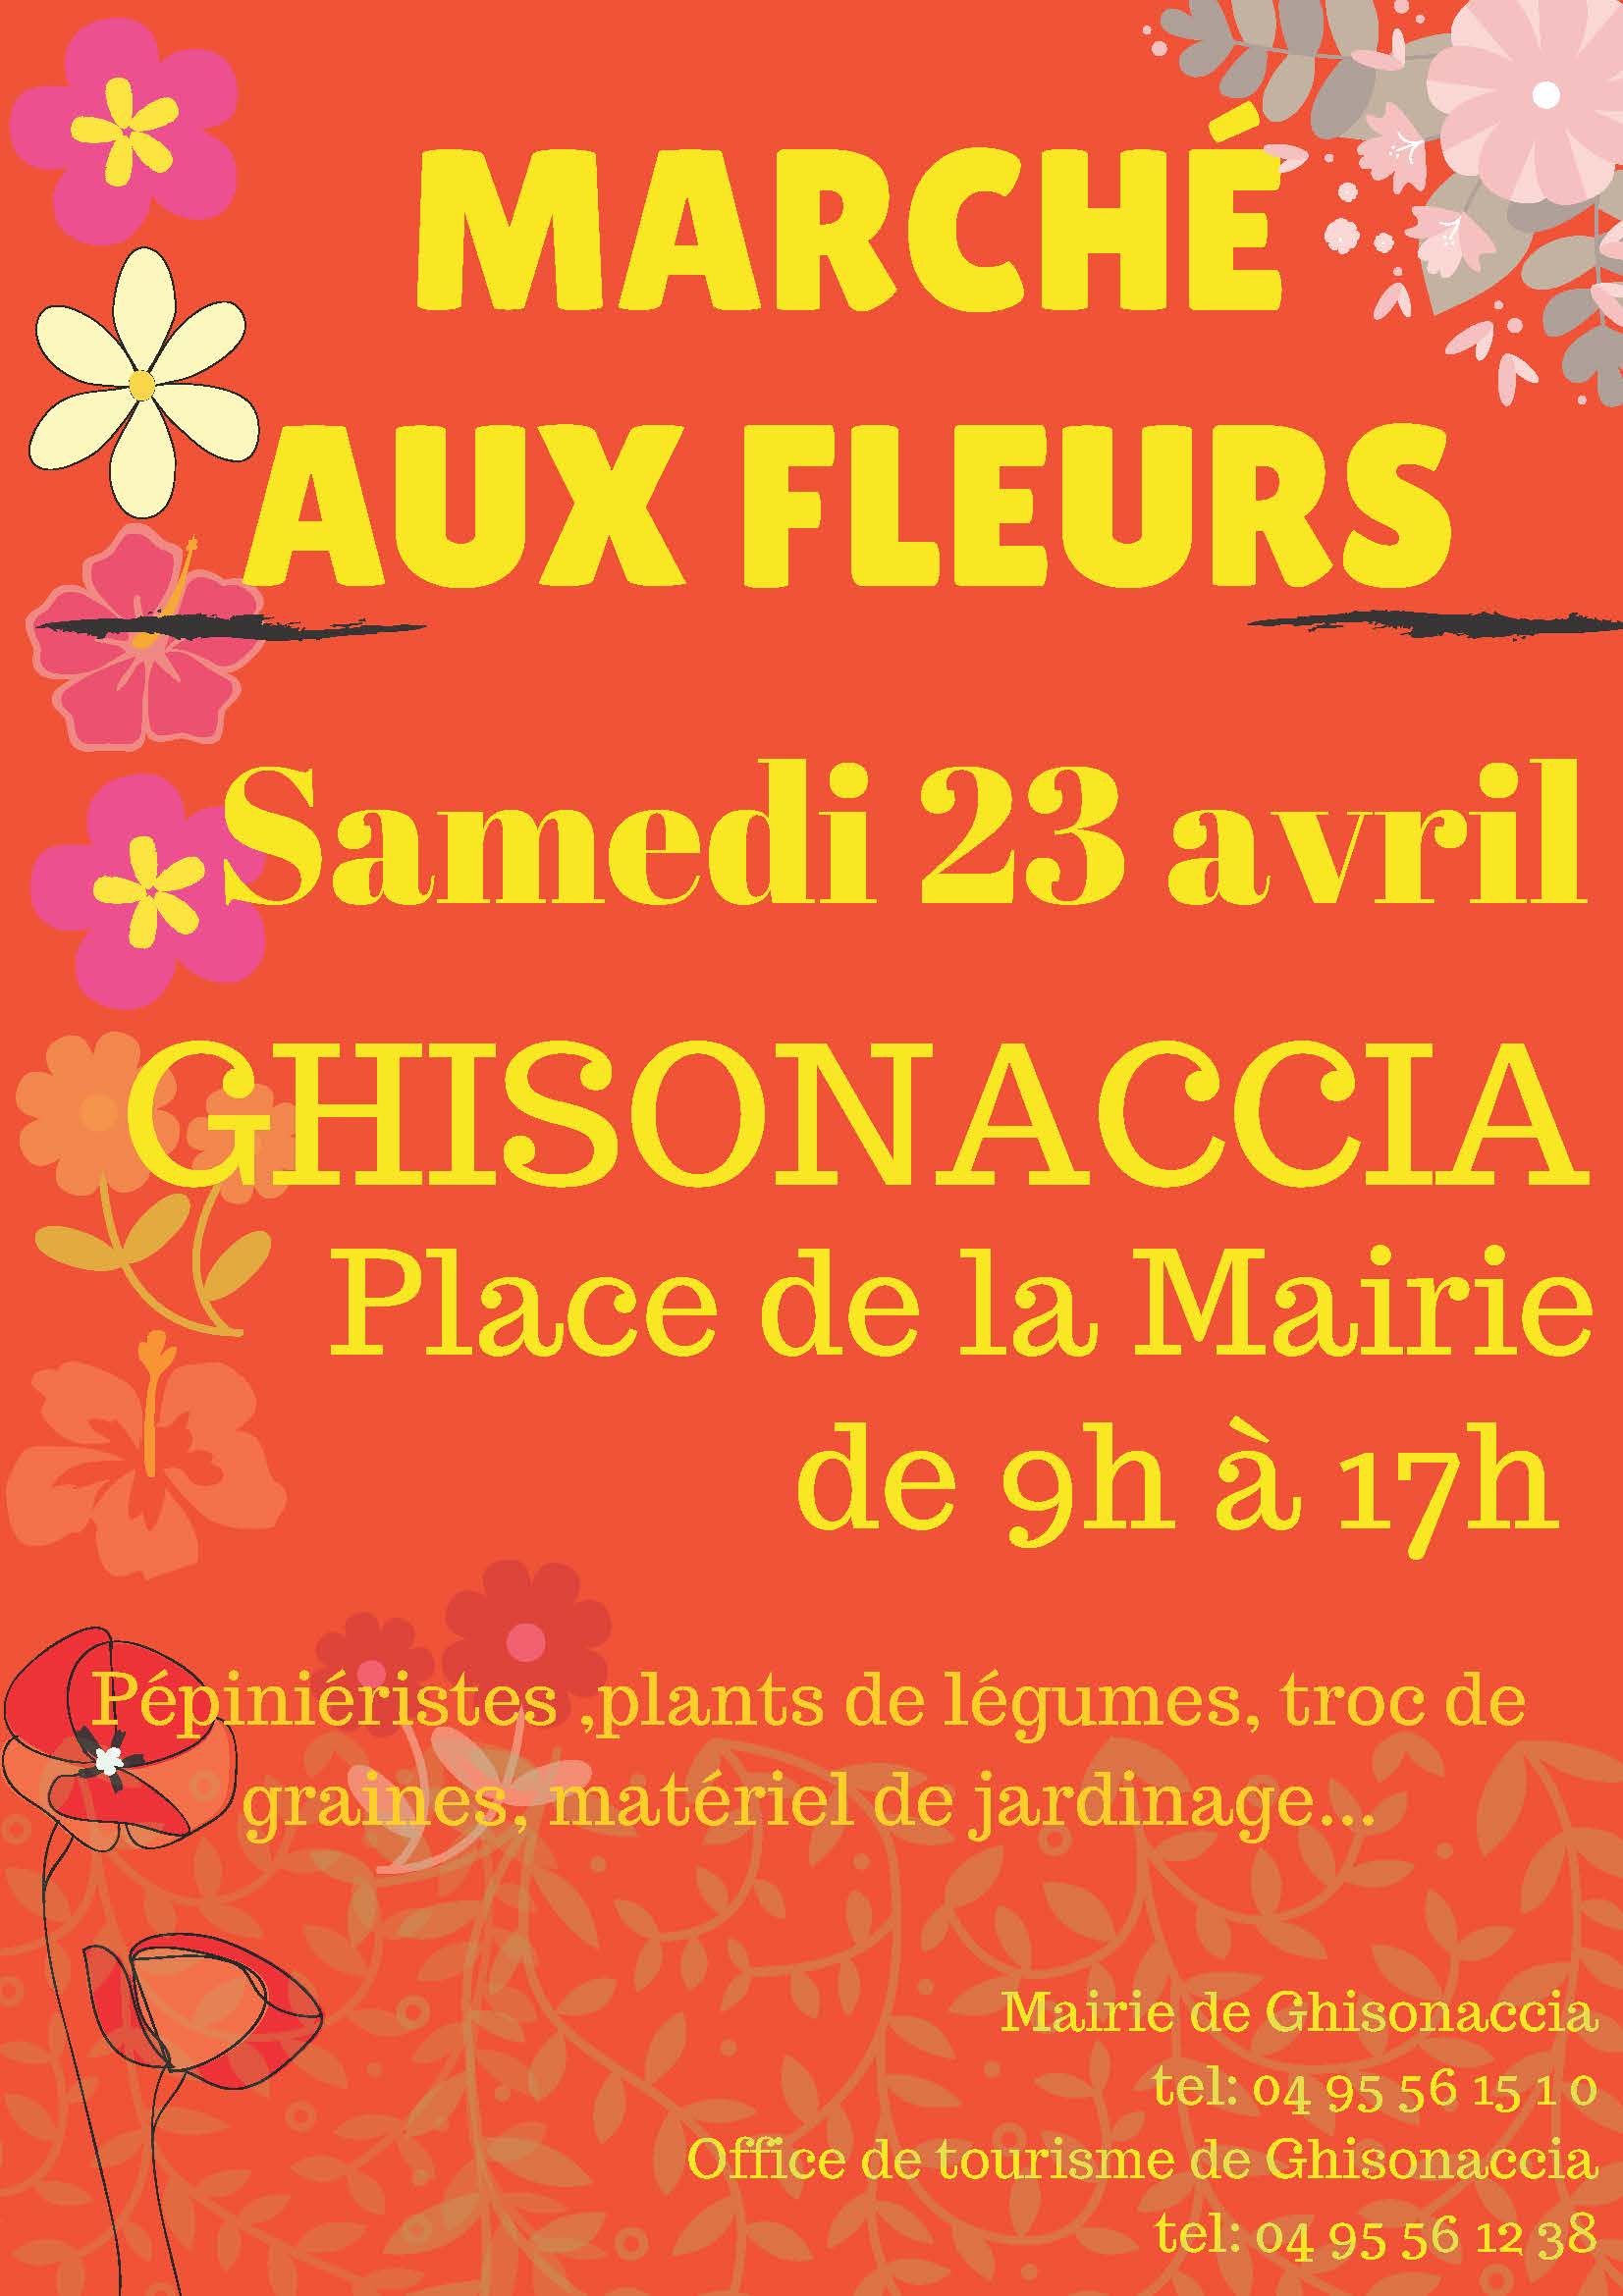 5ème édition du marché aux fleurs de Ghisonaccia